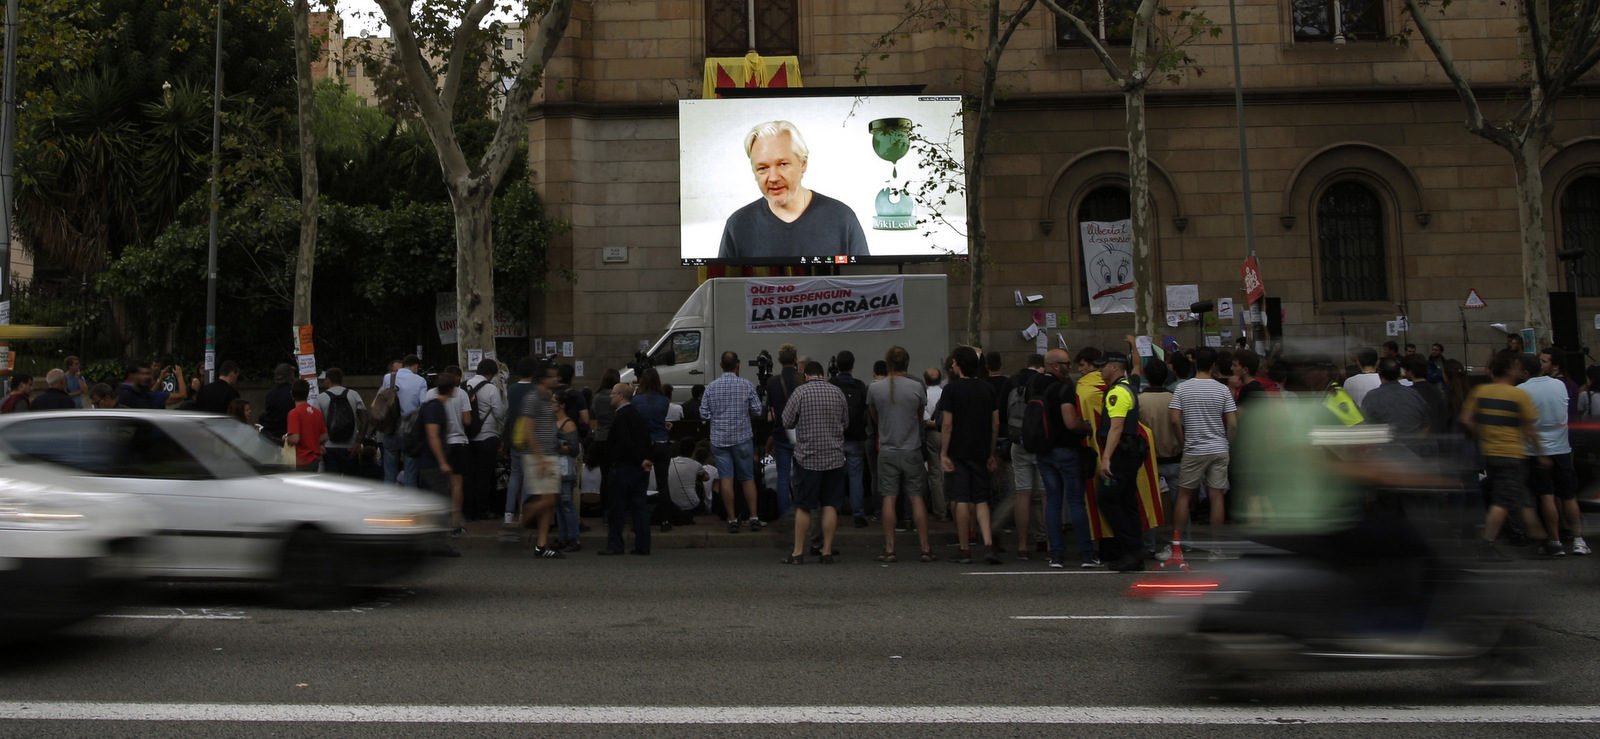 Julian Assange public university in Barcelona